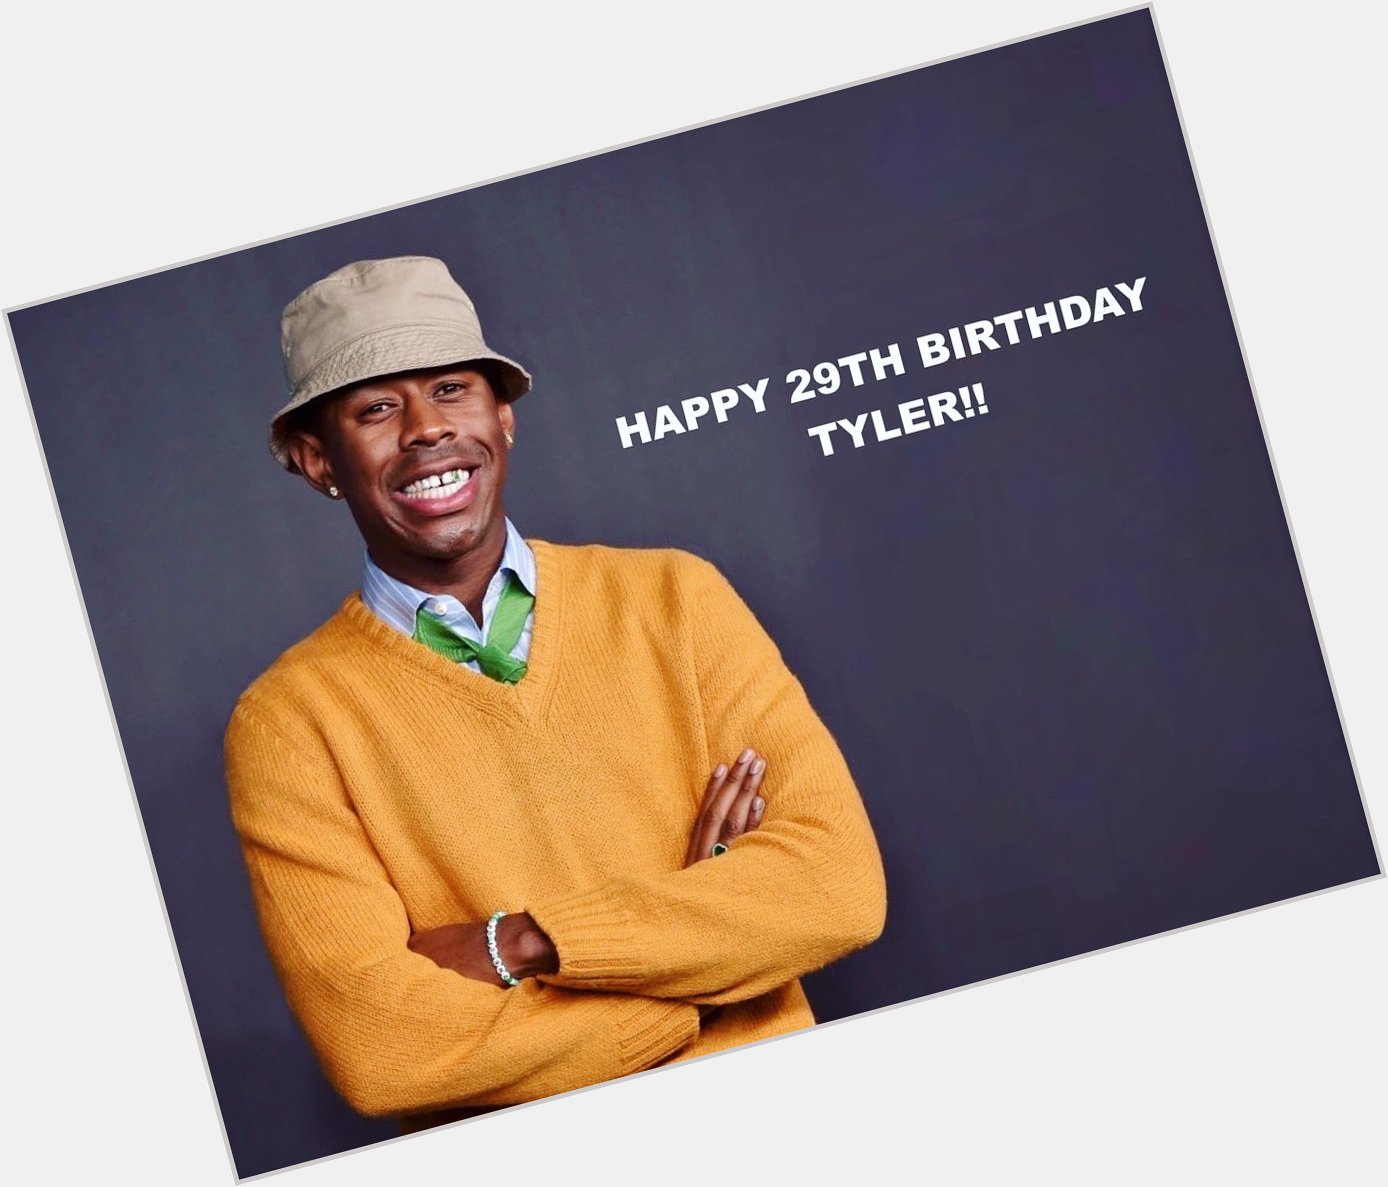 Happy birthday Tyler, The Creator!! 